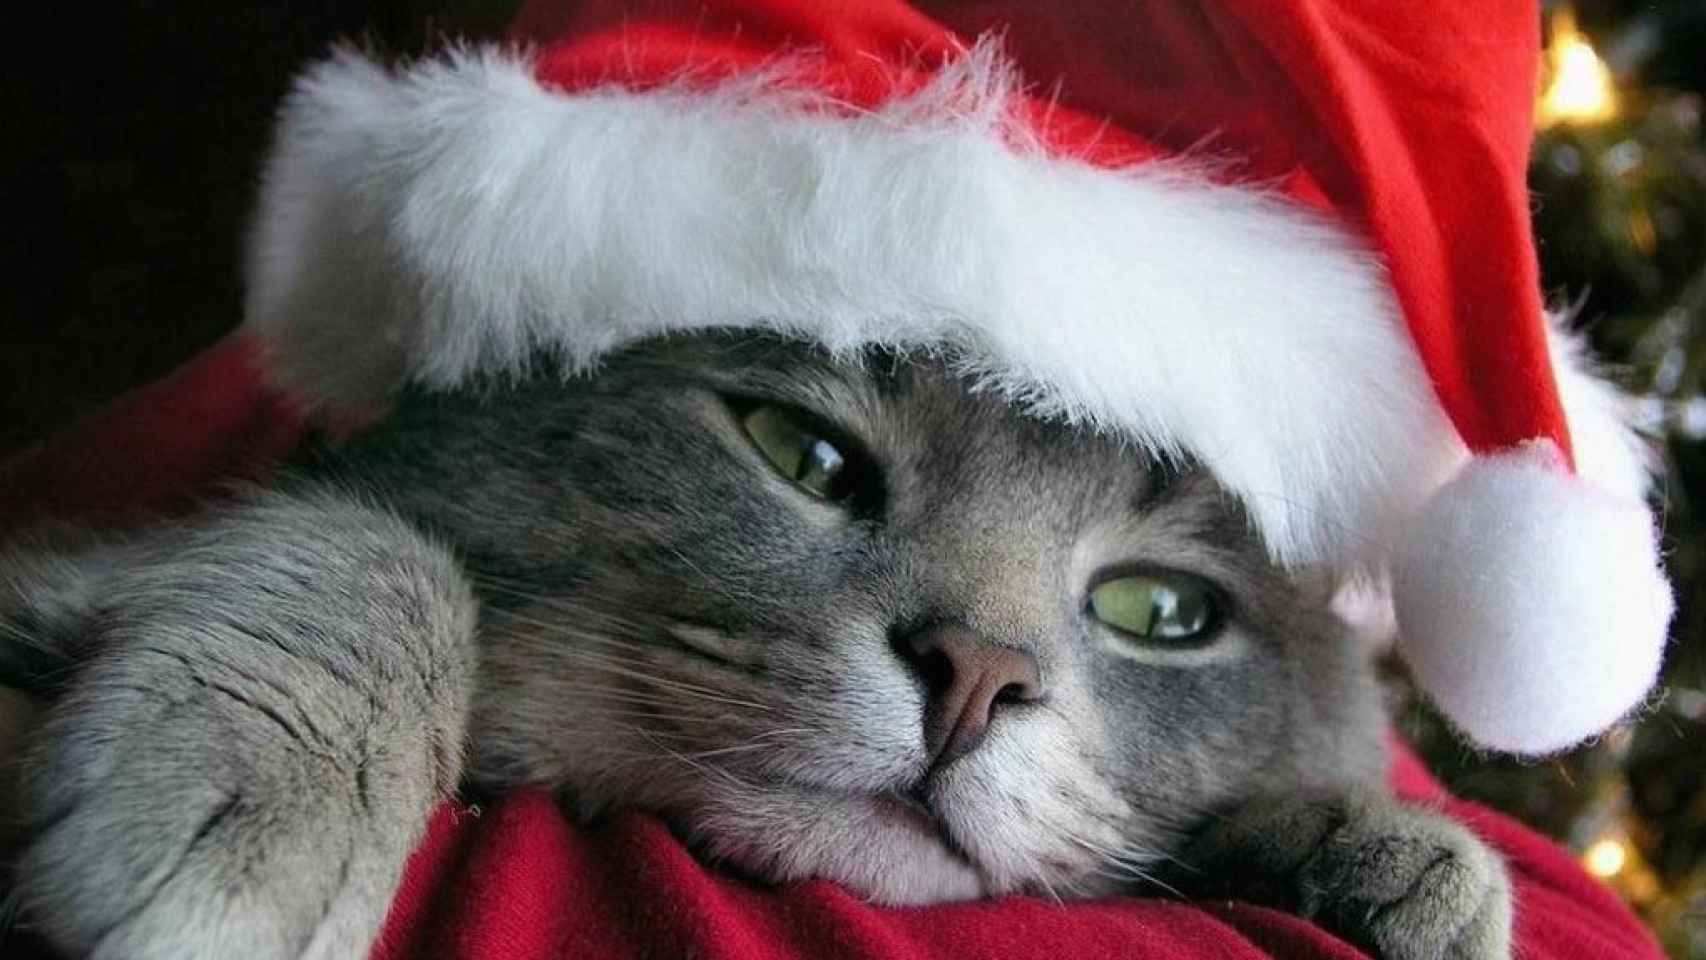 Reembolso para triste Los mejores iconos y fondos de pantalla: Especial Gatitos y Navidad